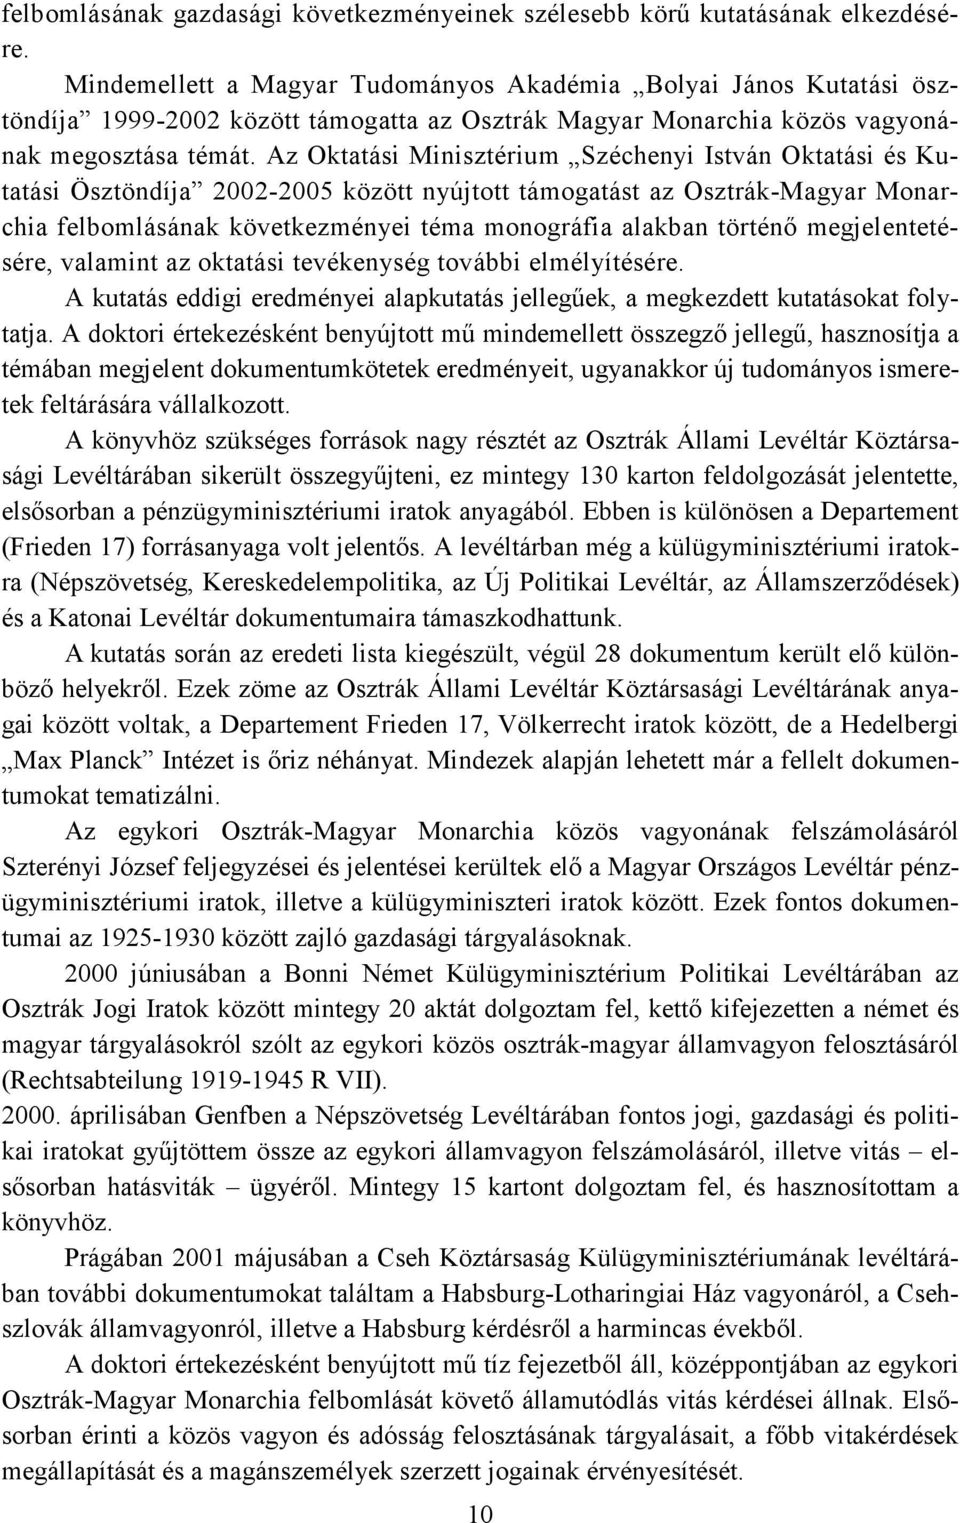 Az Oktatási Minisztérium Széchenyi István Oktatási és Kutatási Ösztöndíja 2002-2005 között nyújtott támogatást az Osztrák-Magyar Monarchia felbomlásának következményei téma monográfia alakban történő